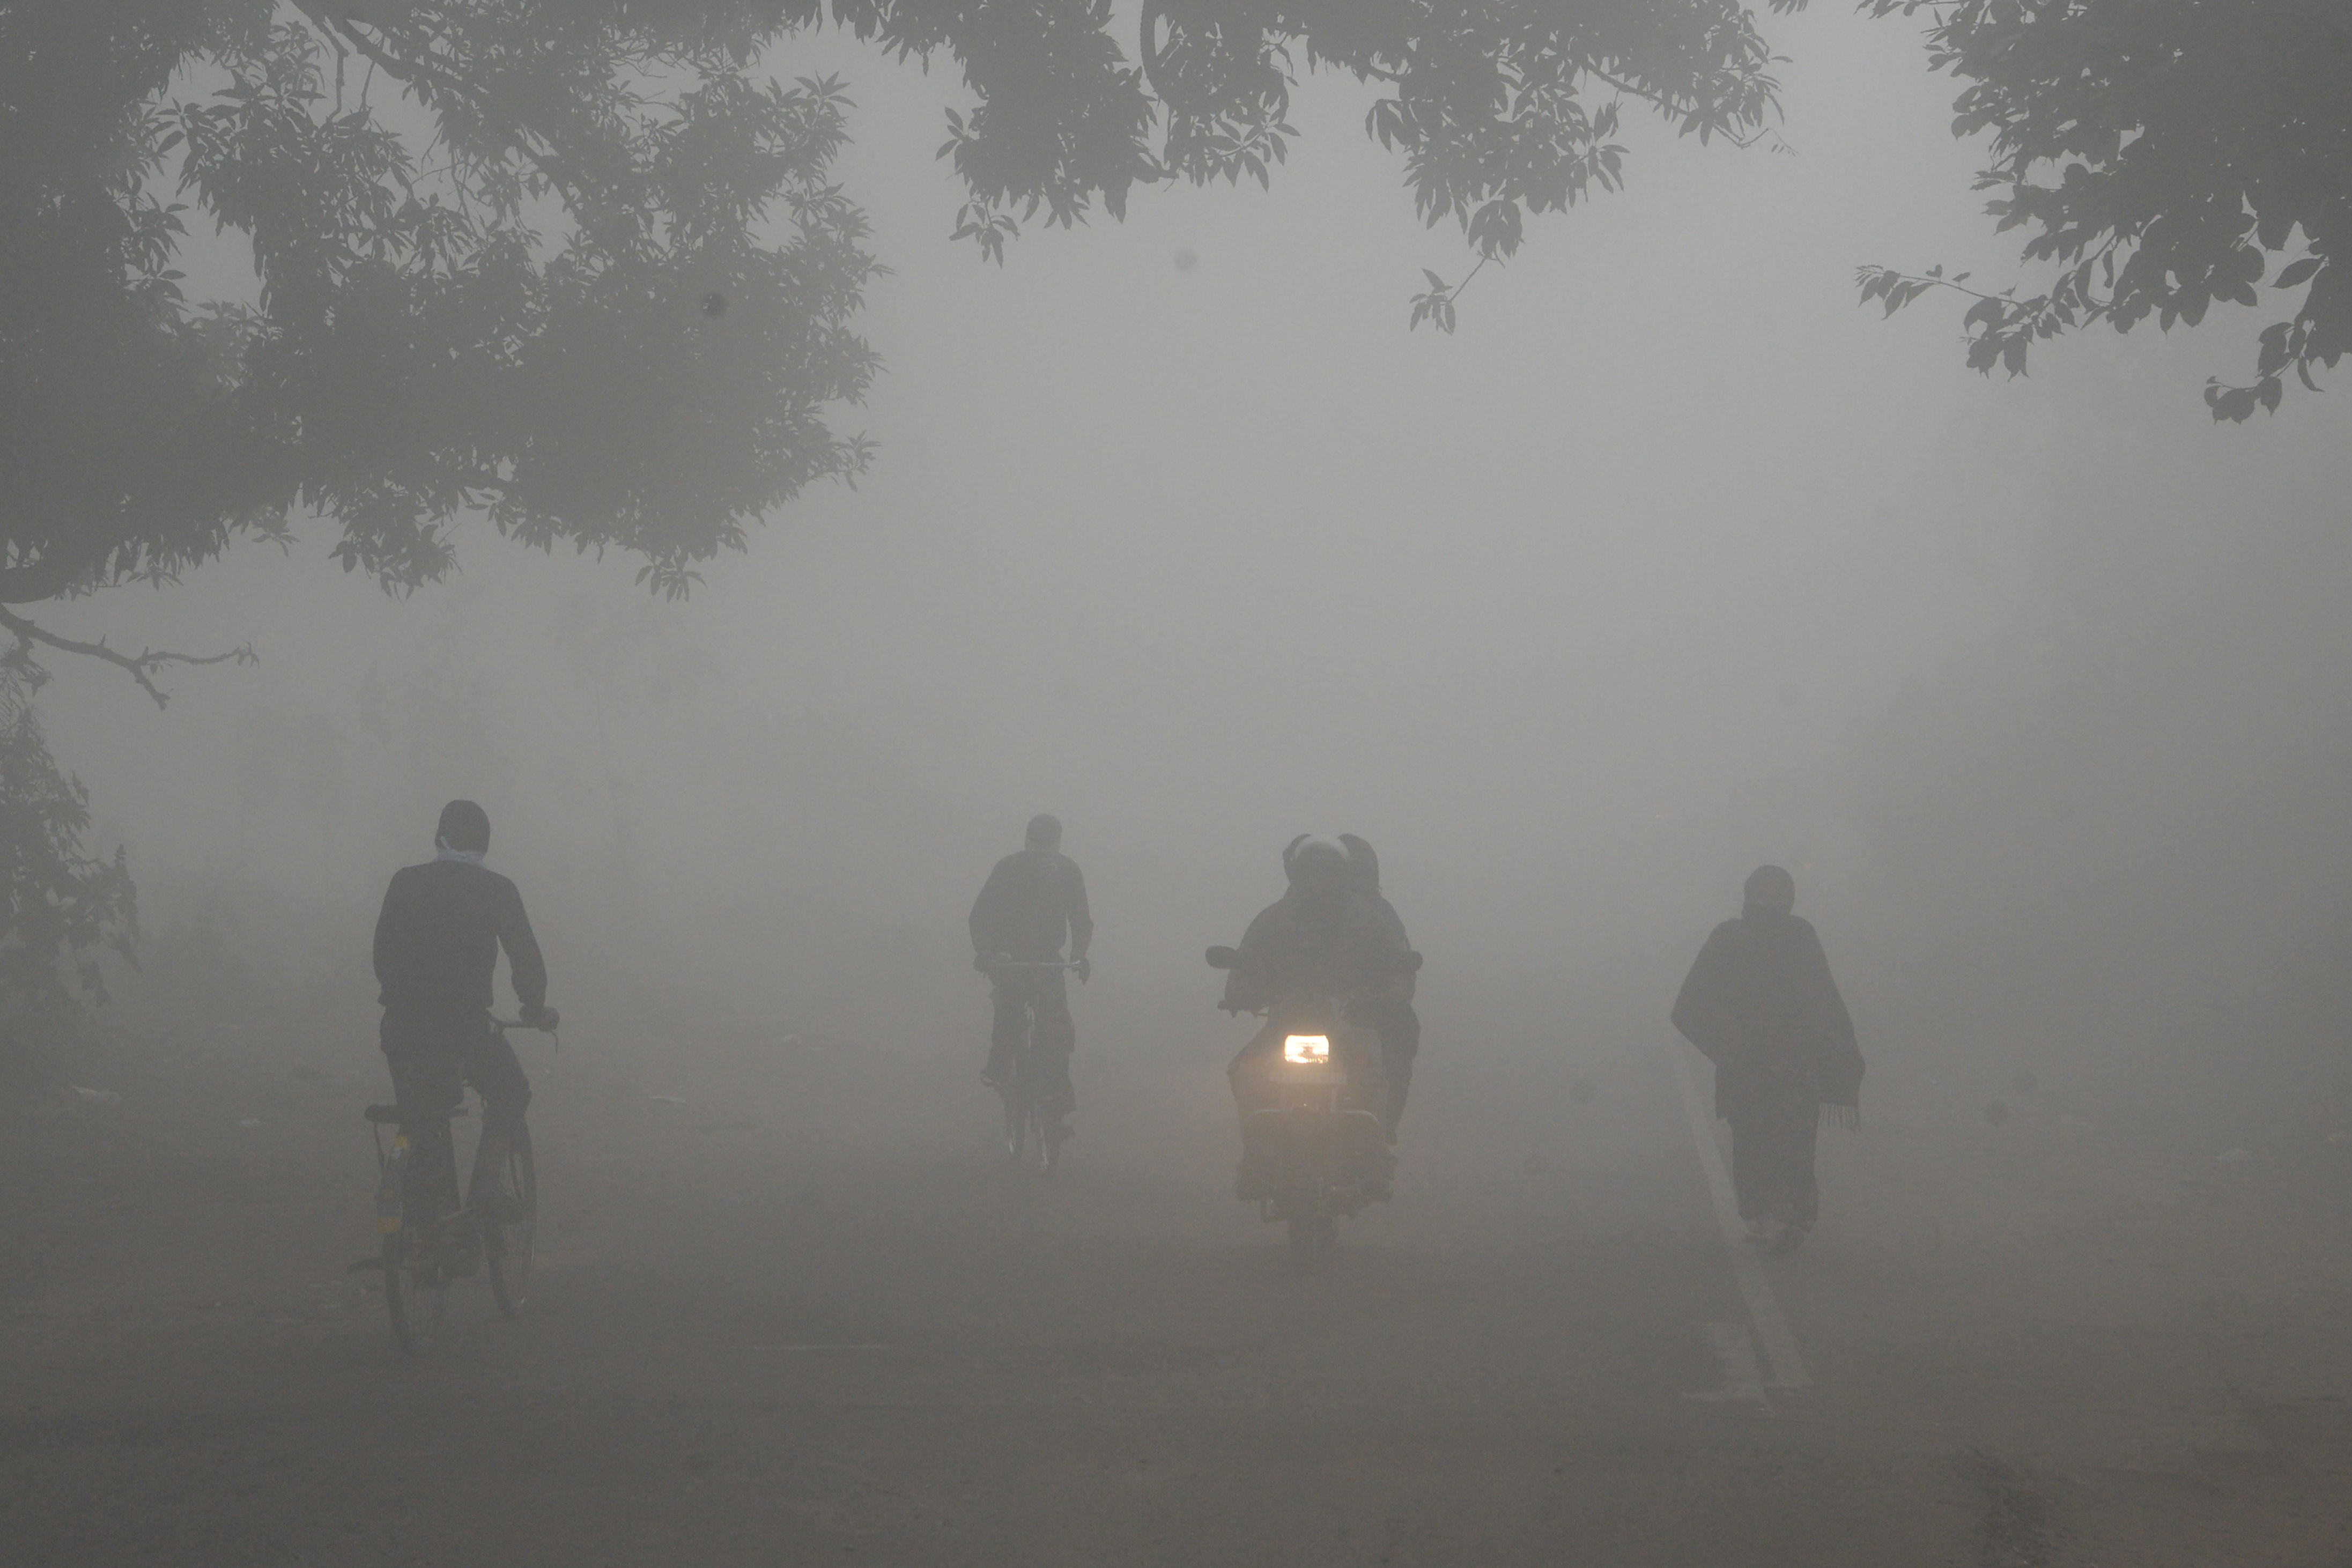 Delhi wakes up to dense fog